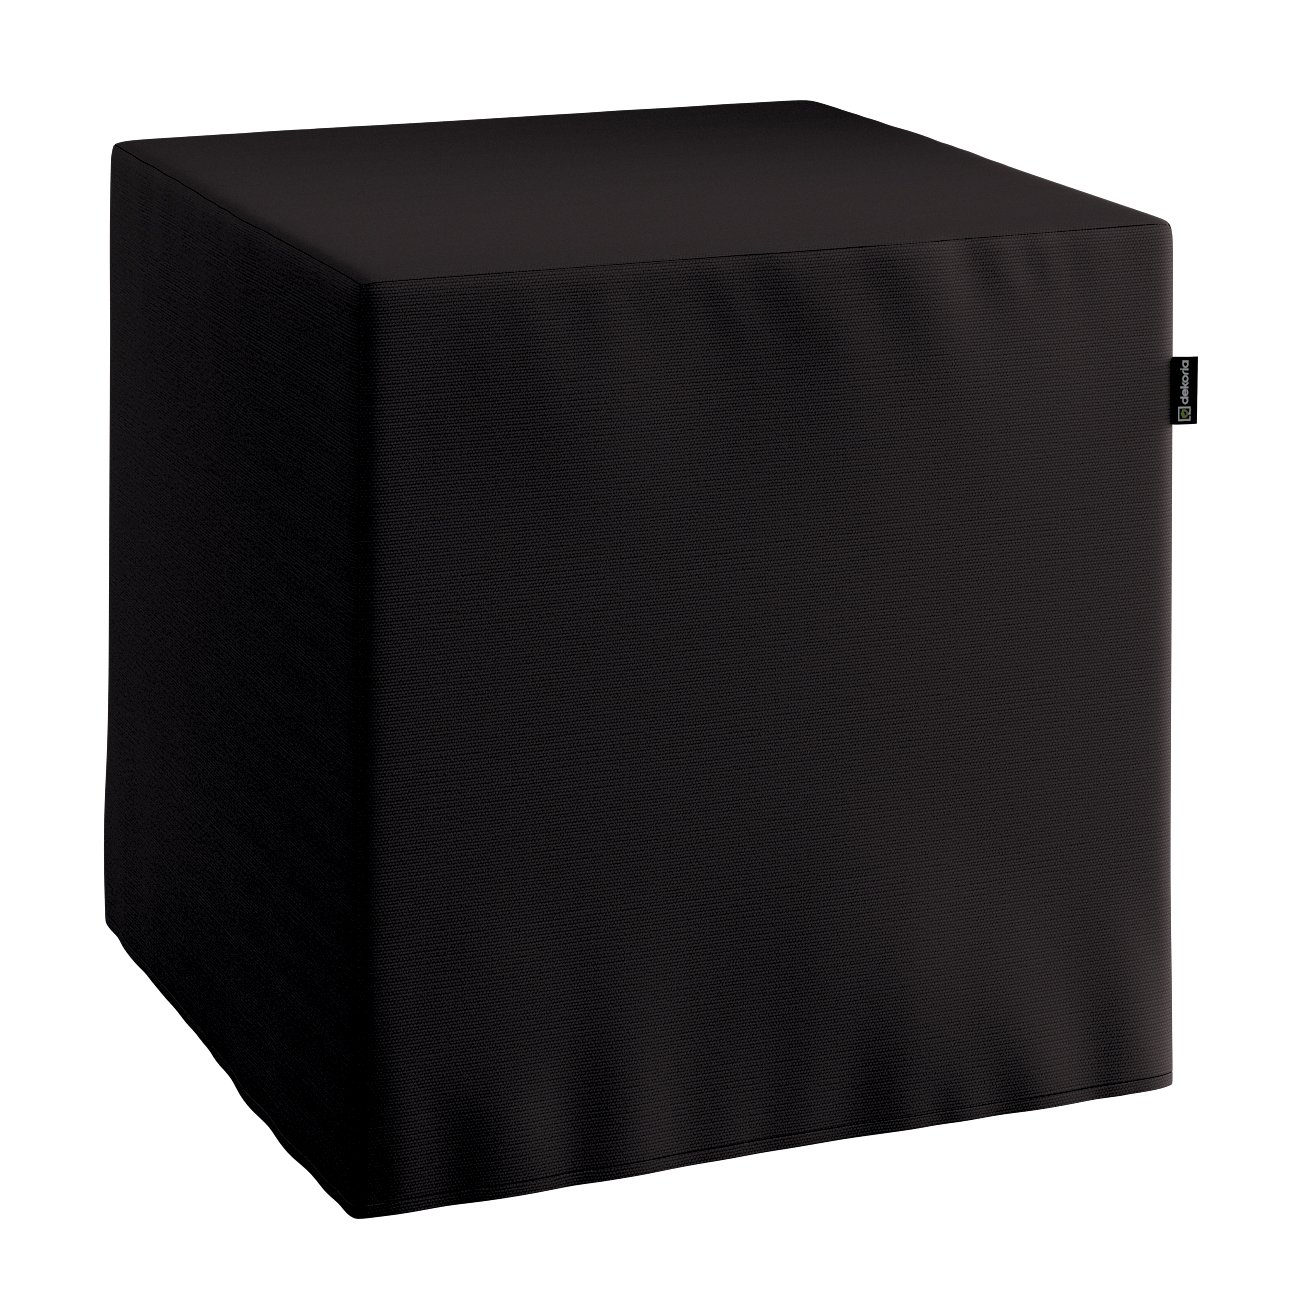 Bezug für Sitzwürfel, schwarz, Bezug für Sitzwürfel 40 x 40 x 40 cm, Cotton günstig online kaufen